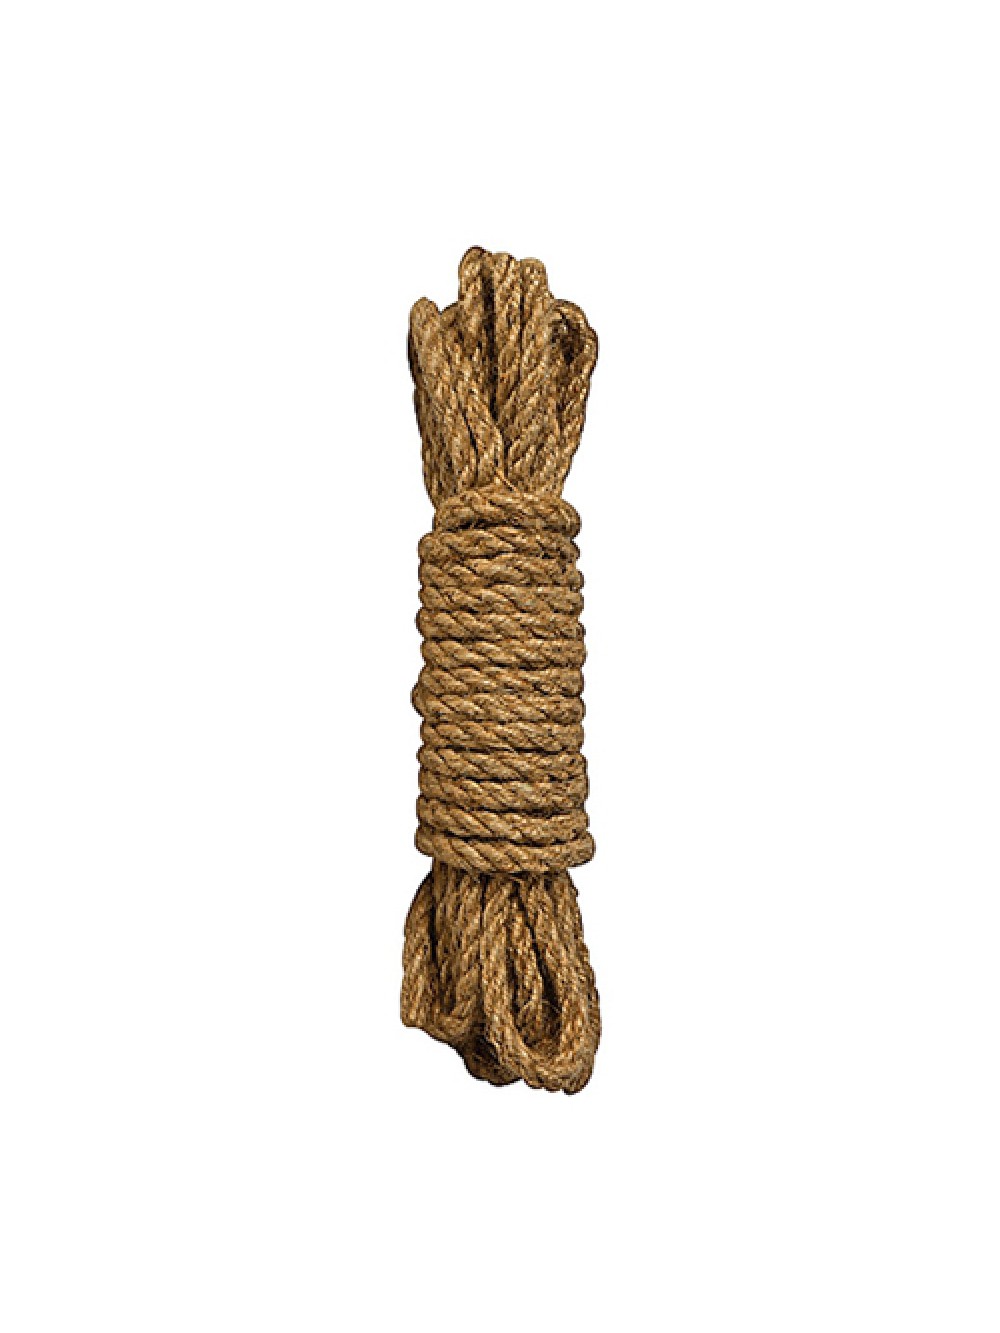 Shibari Rope - 10m - Brown